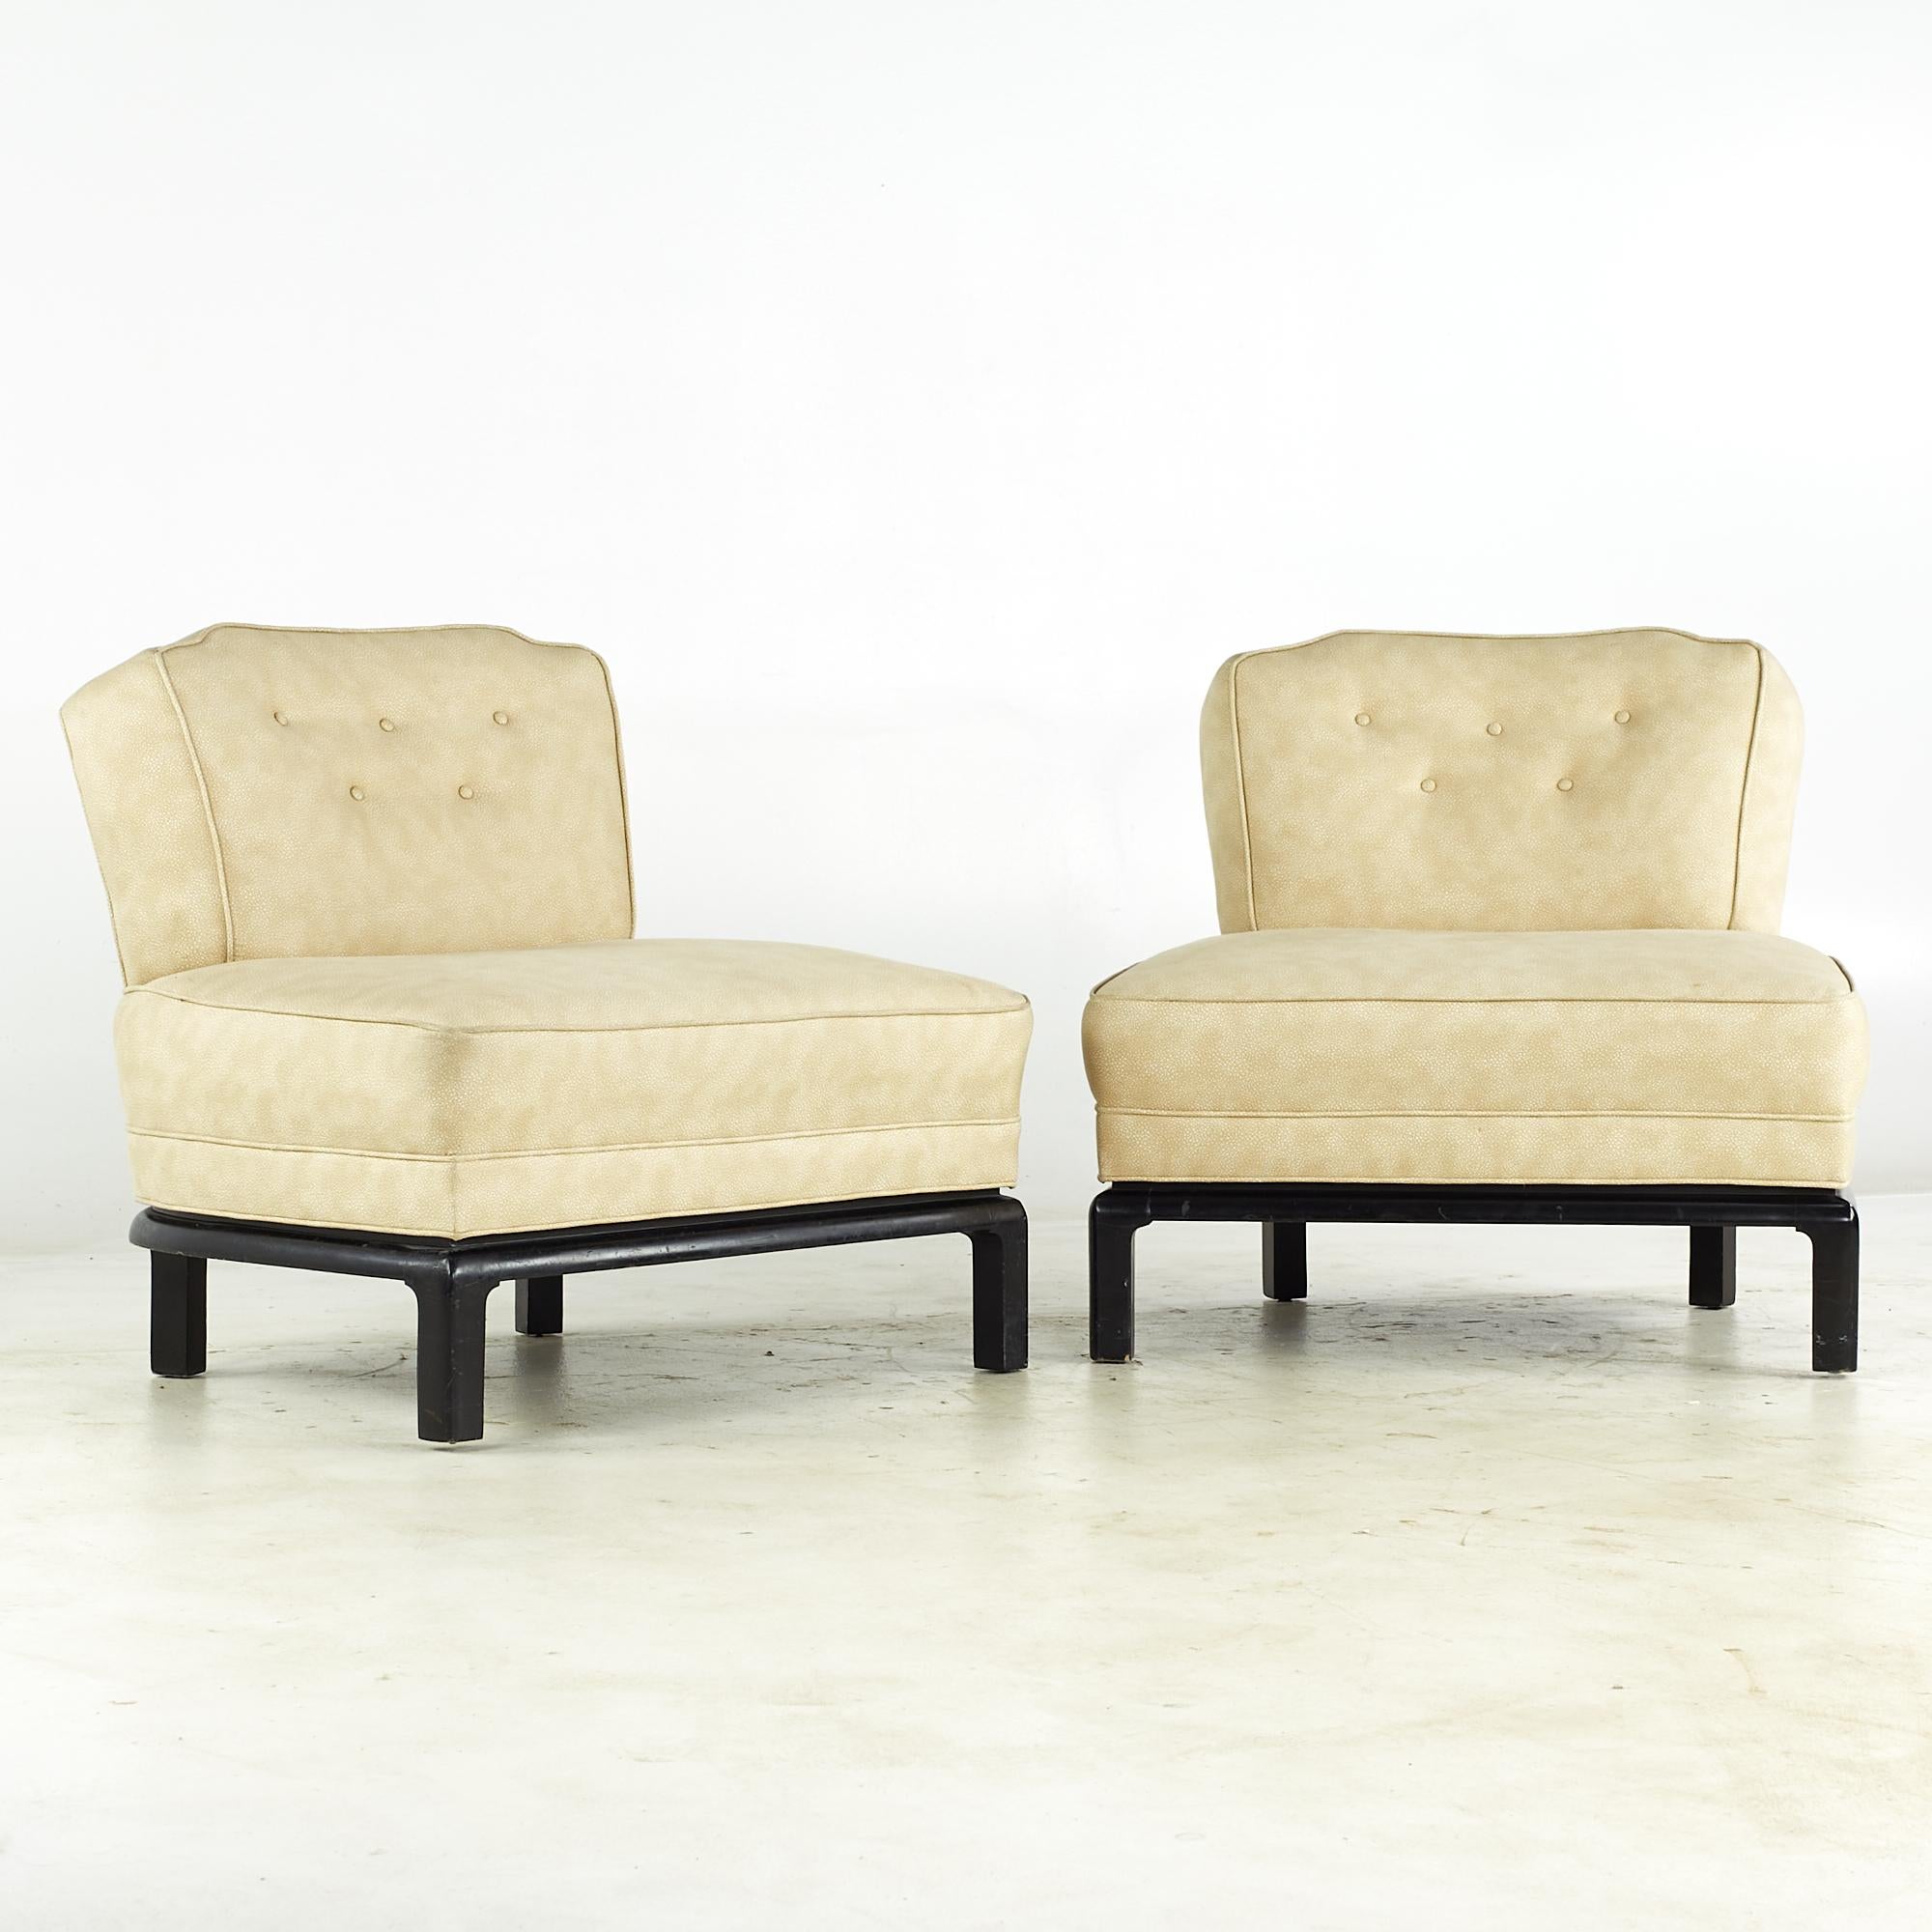 Michael Taylor für Baker Midcentury Slipper Lounge Chairs - Paar

Jeder Stuhl misst: 32 breit x 26 tief x 30 hoch, mit einer Sitzhöhe von 16,5 Zoll

Alle Möbelstücke sind in einem so genannten restaurierten Vintage-Zustand zu haben. Das